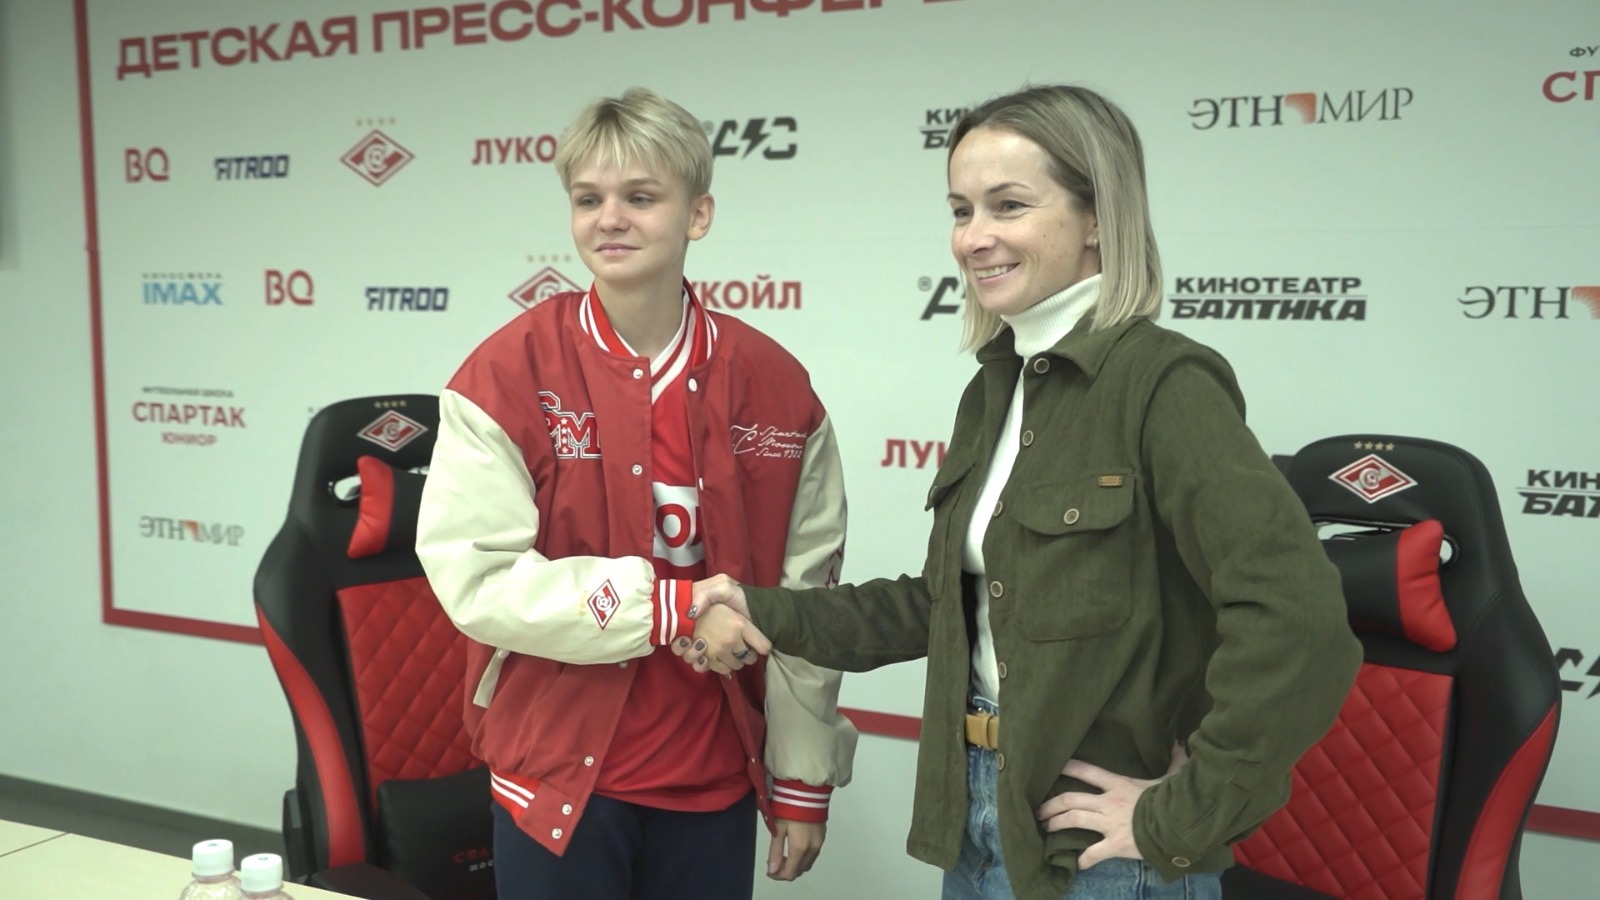 Уроженка Костромы Ксения Коноваева стала игроком женской футбольной команды «Спартак»